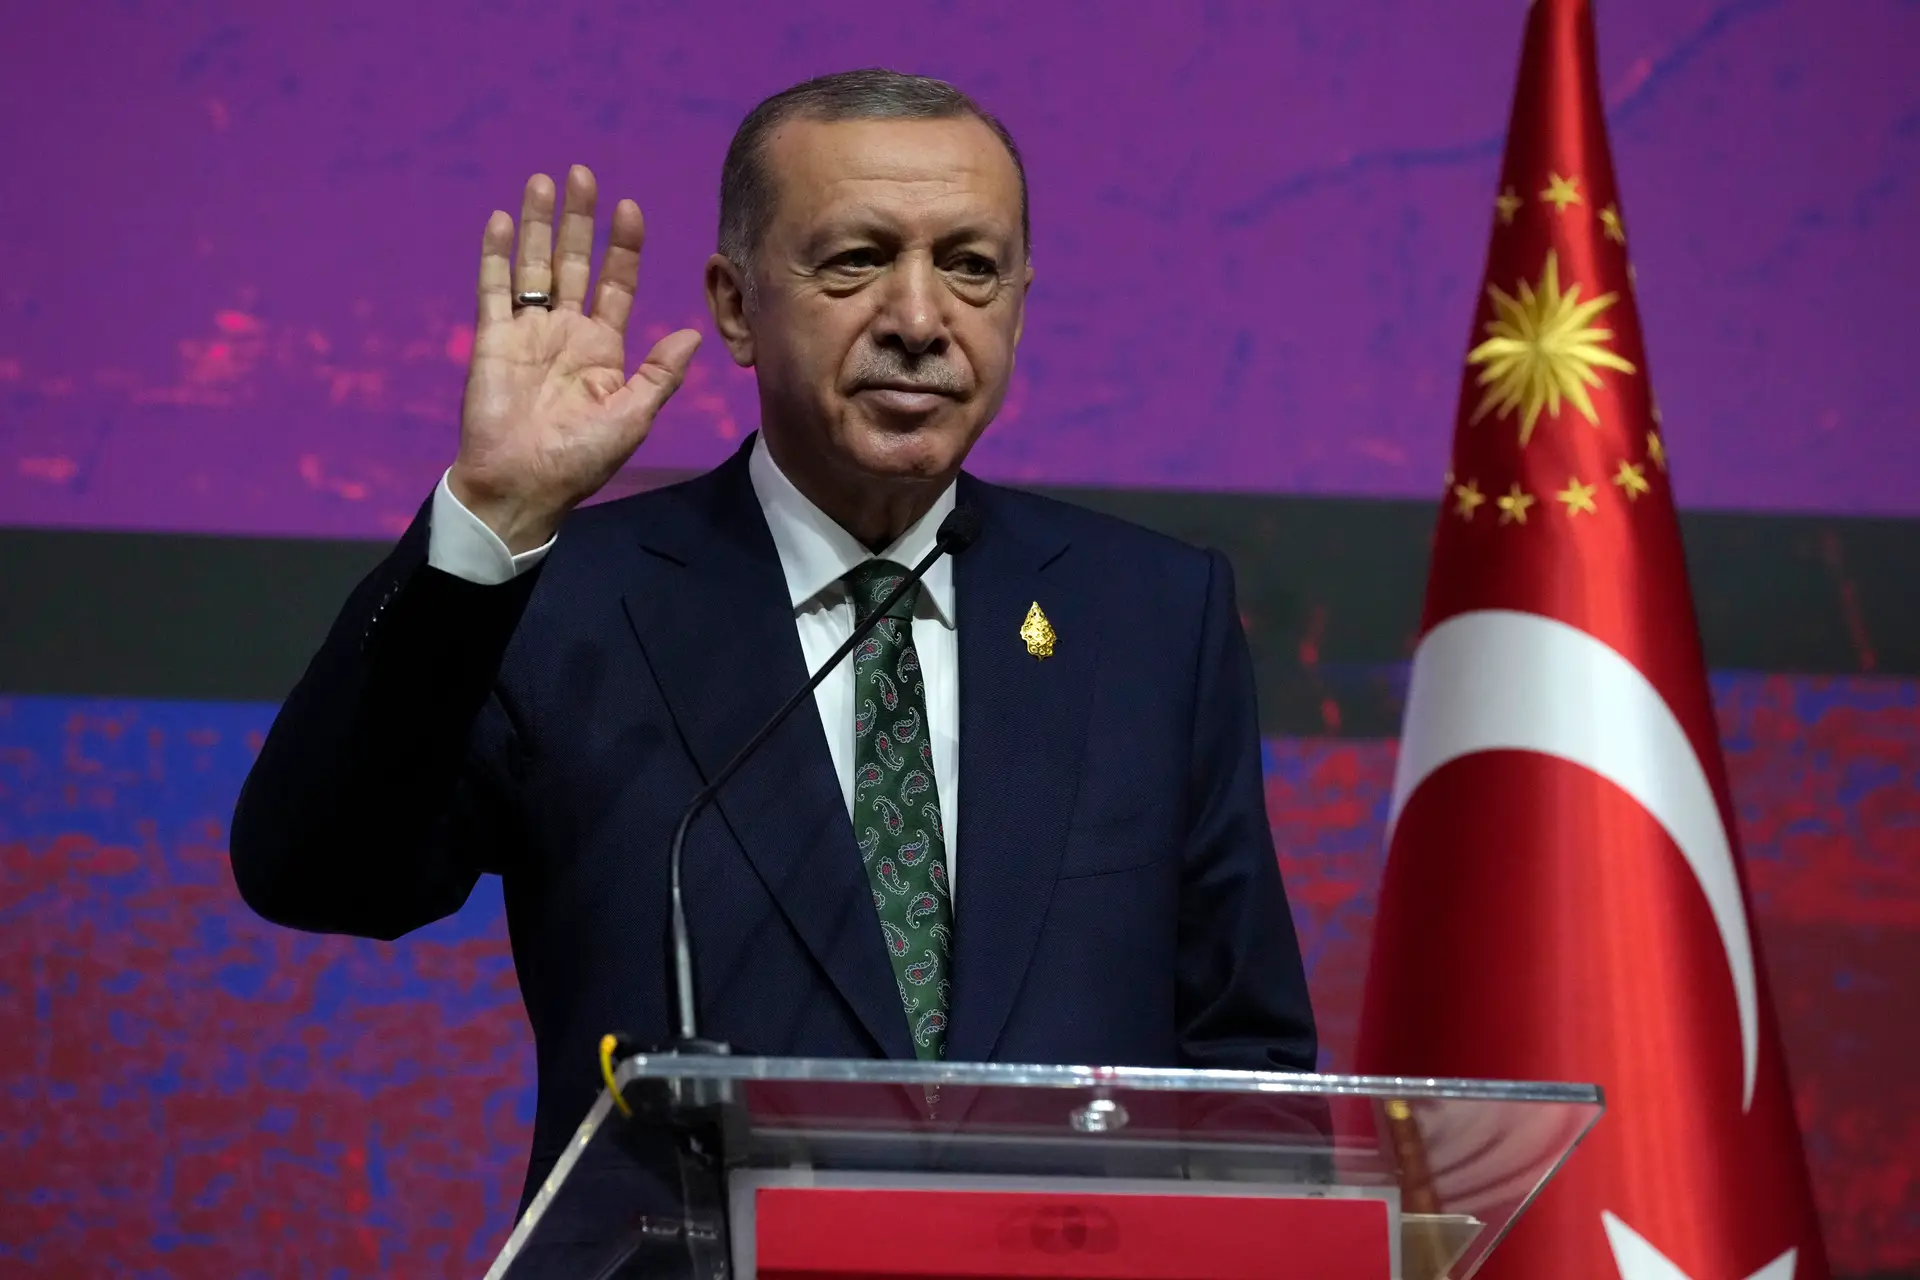 Turquia convoca embaixador sueco por imagens que "insultam" Presidente turco